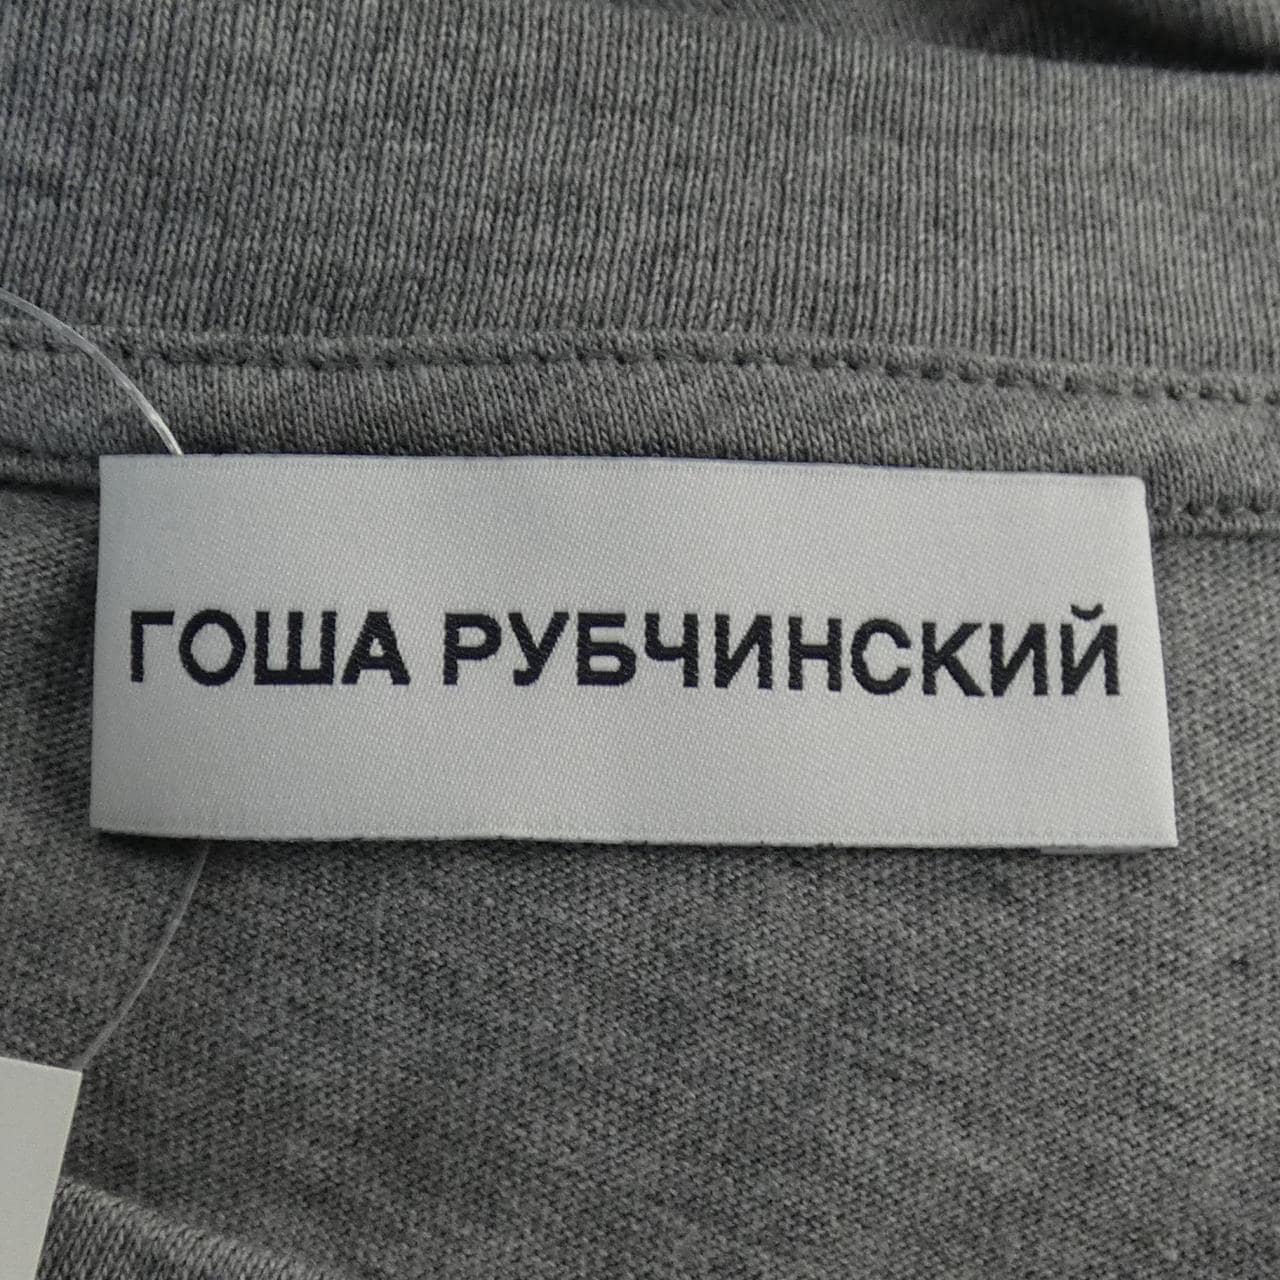 ゴーシャラブチンスキー GOSHA RUBCHINSKIY Tシャツ